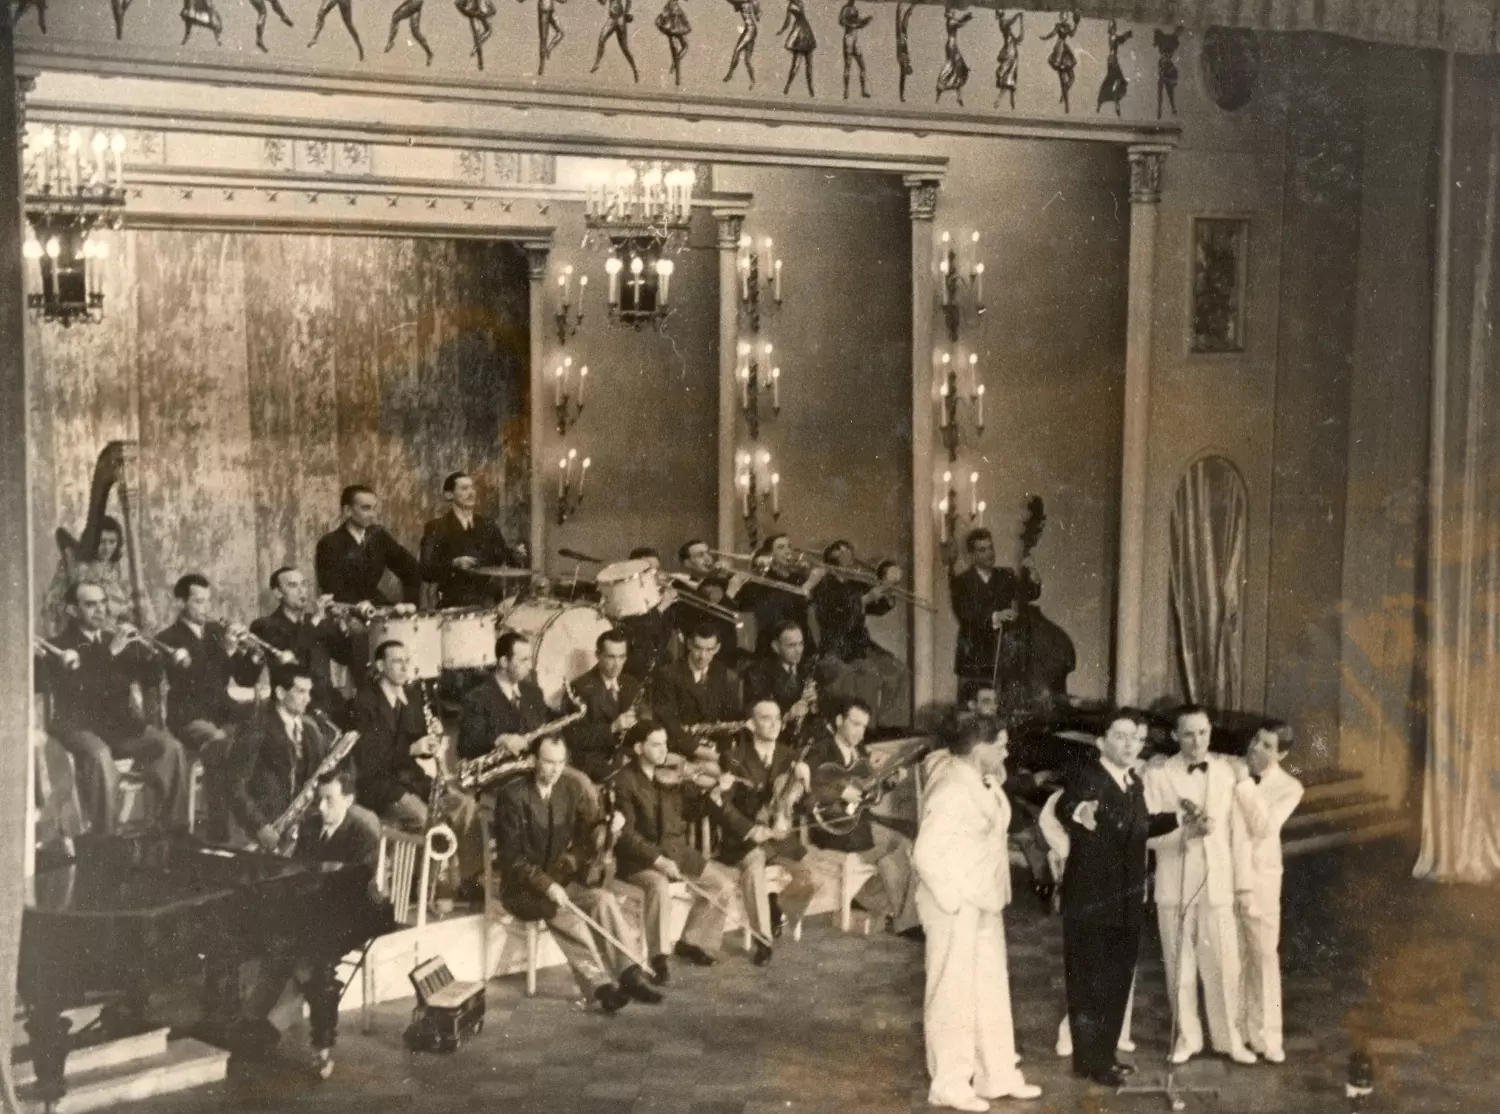 Генрих Терпиловский с джаз-оркестром Л.О. Утесова на сцене во время выступления в Перми. 1955 год.